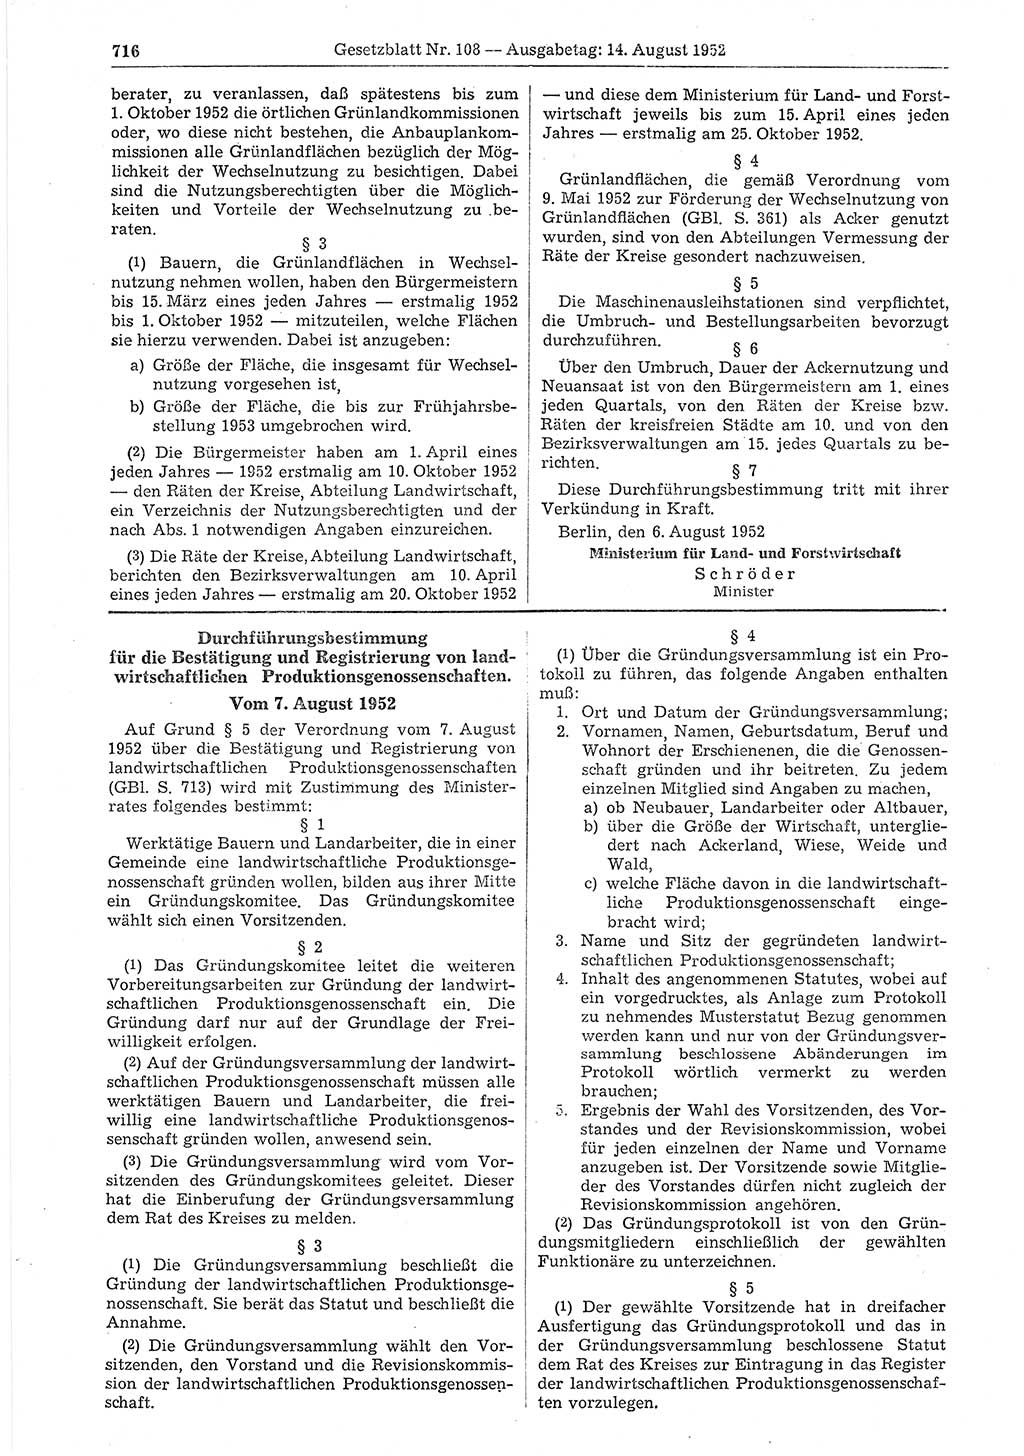 Gesetzblatt (GBl.) der Deutschen Demokratischen Republik (DDR) 1952, Seite 716 (GBl. DDR 1952, S. 716)